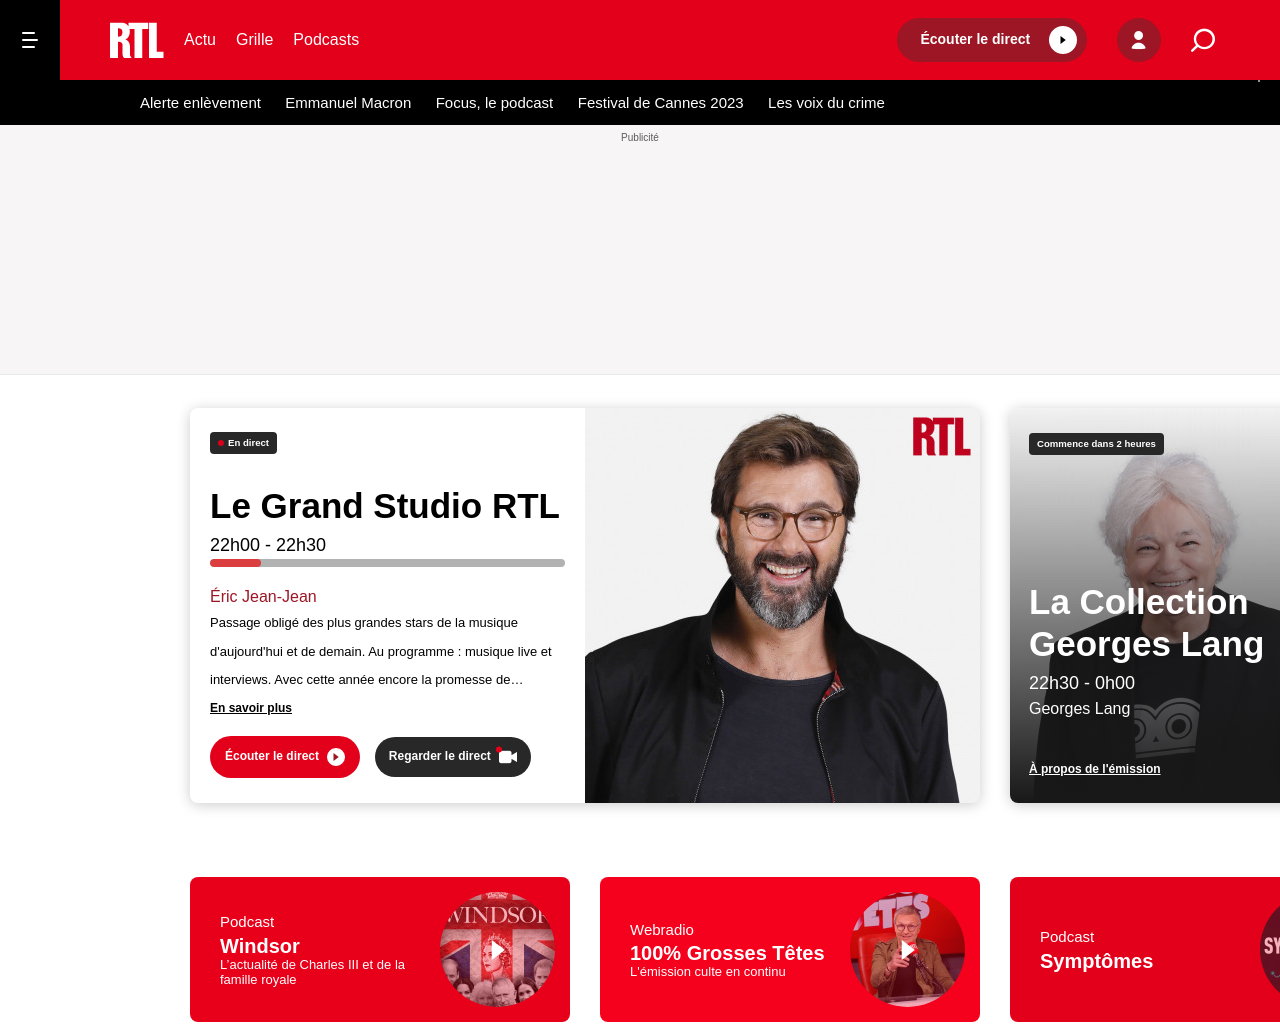 www.rtl.fr